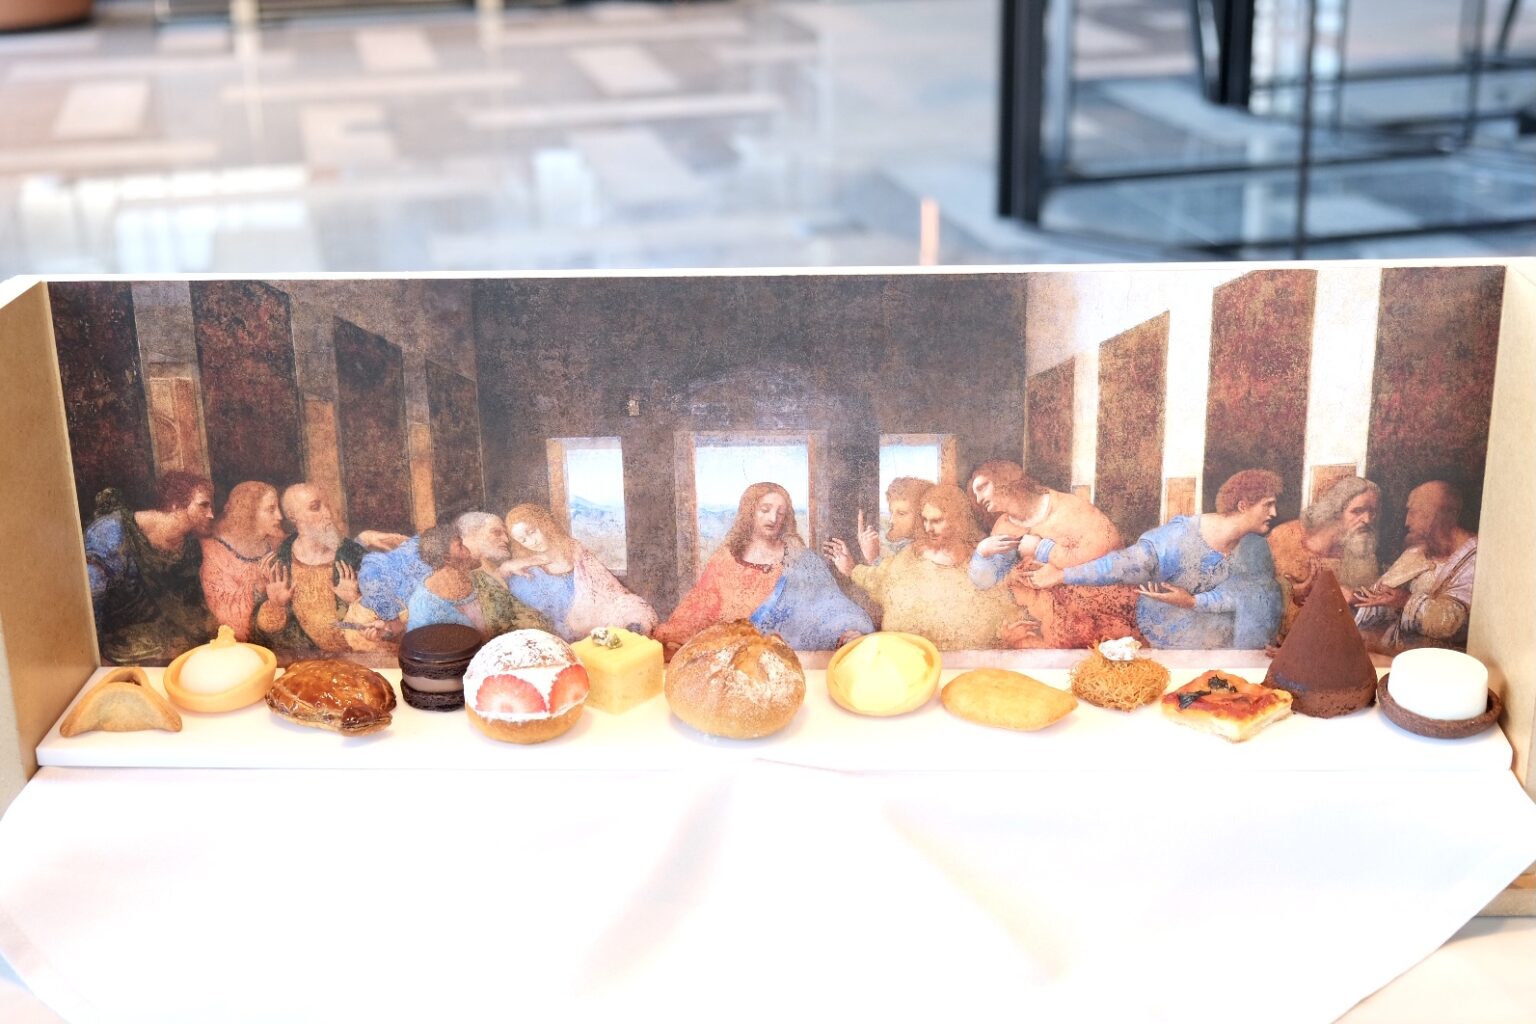 左から順にハマンの耳（バルトロマイ）、レモンのシャーベット（小ヤコブ）、魚の形のミートパイ（アンデレ）、チョコサンド（ユダ）、マリトッツォ（ペテロ）、レバニ（ヨハネ）、パン・ド・カンパーニュ（イエス）、クルフィ（トマス）、タルタ・デ・サンティアゴ（大ヤコブ）、キュネフェ（フィリポ）、ピッザ・マルゲリータ（マタイ）、ティラミス（タダイ）、マハラベイヤ（シモン）。